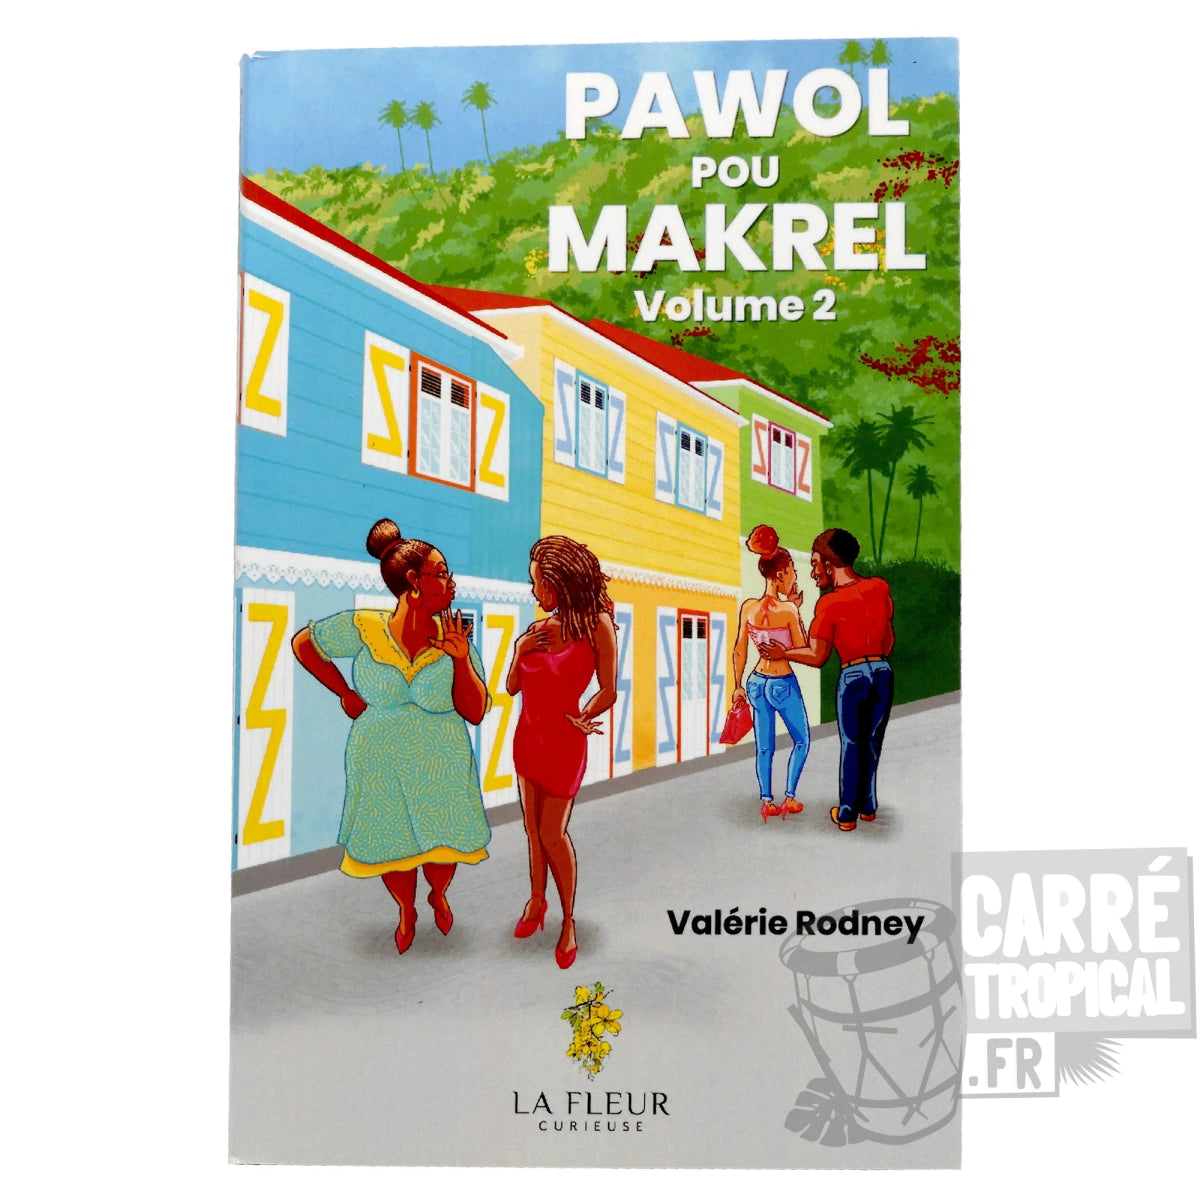 PAWOL POU MAKREL VOLUME 2 👀 Recueil de 15 contes créoles | Par Valérie Rodney - Carré TropicalLivres